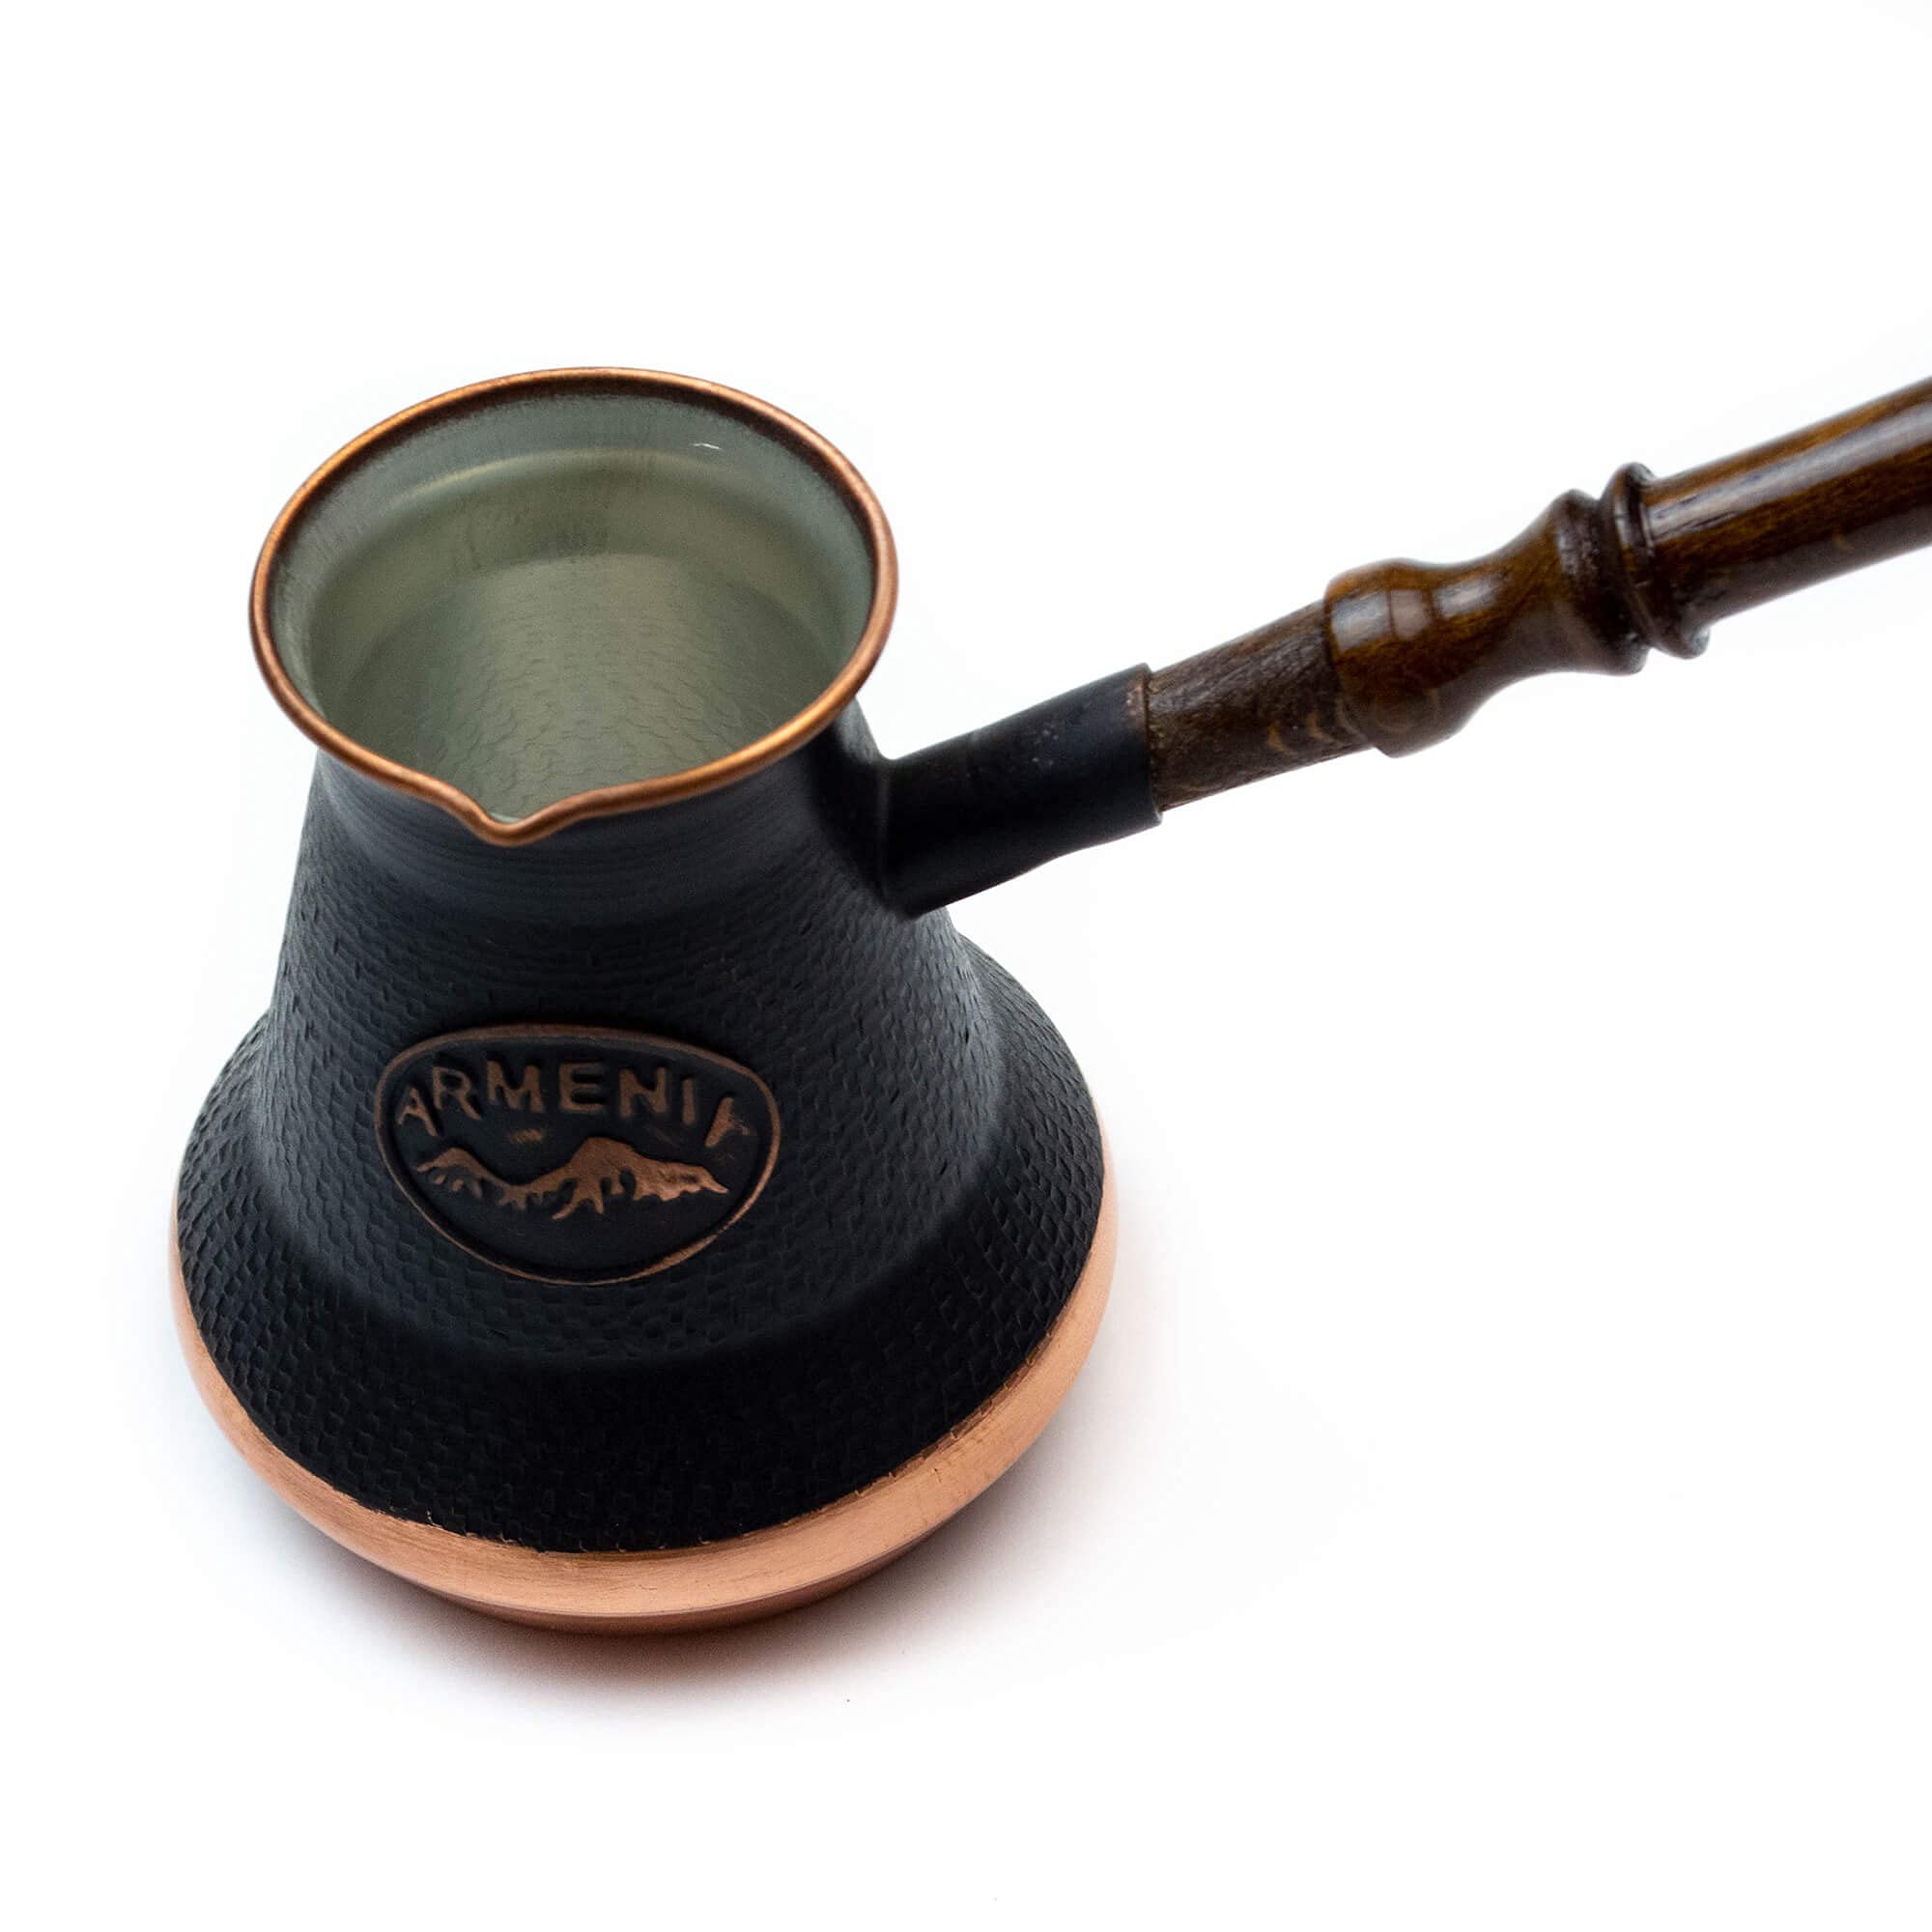 Handmade Armenian Coffee Pot 21 Fl Oz - Copper Jazva Ararat - Turkish  Arabic Greek Cezve Jezve Ibrik Turka Jazve Maker - Wooden Handle - (7 Cup  (21 US